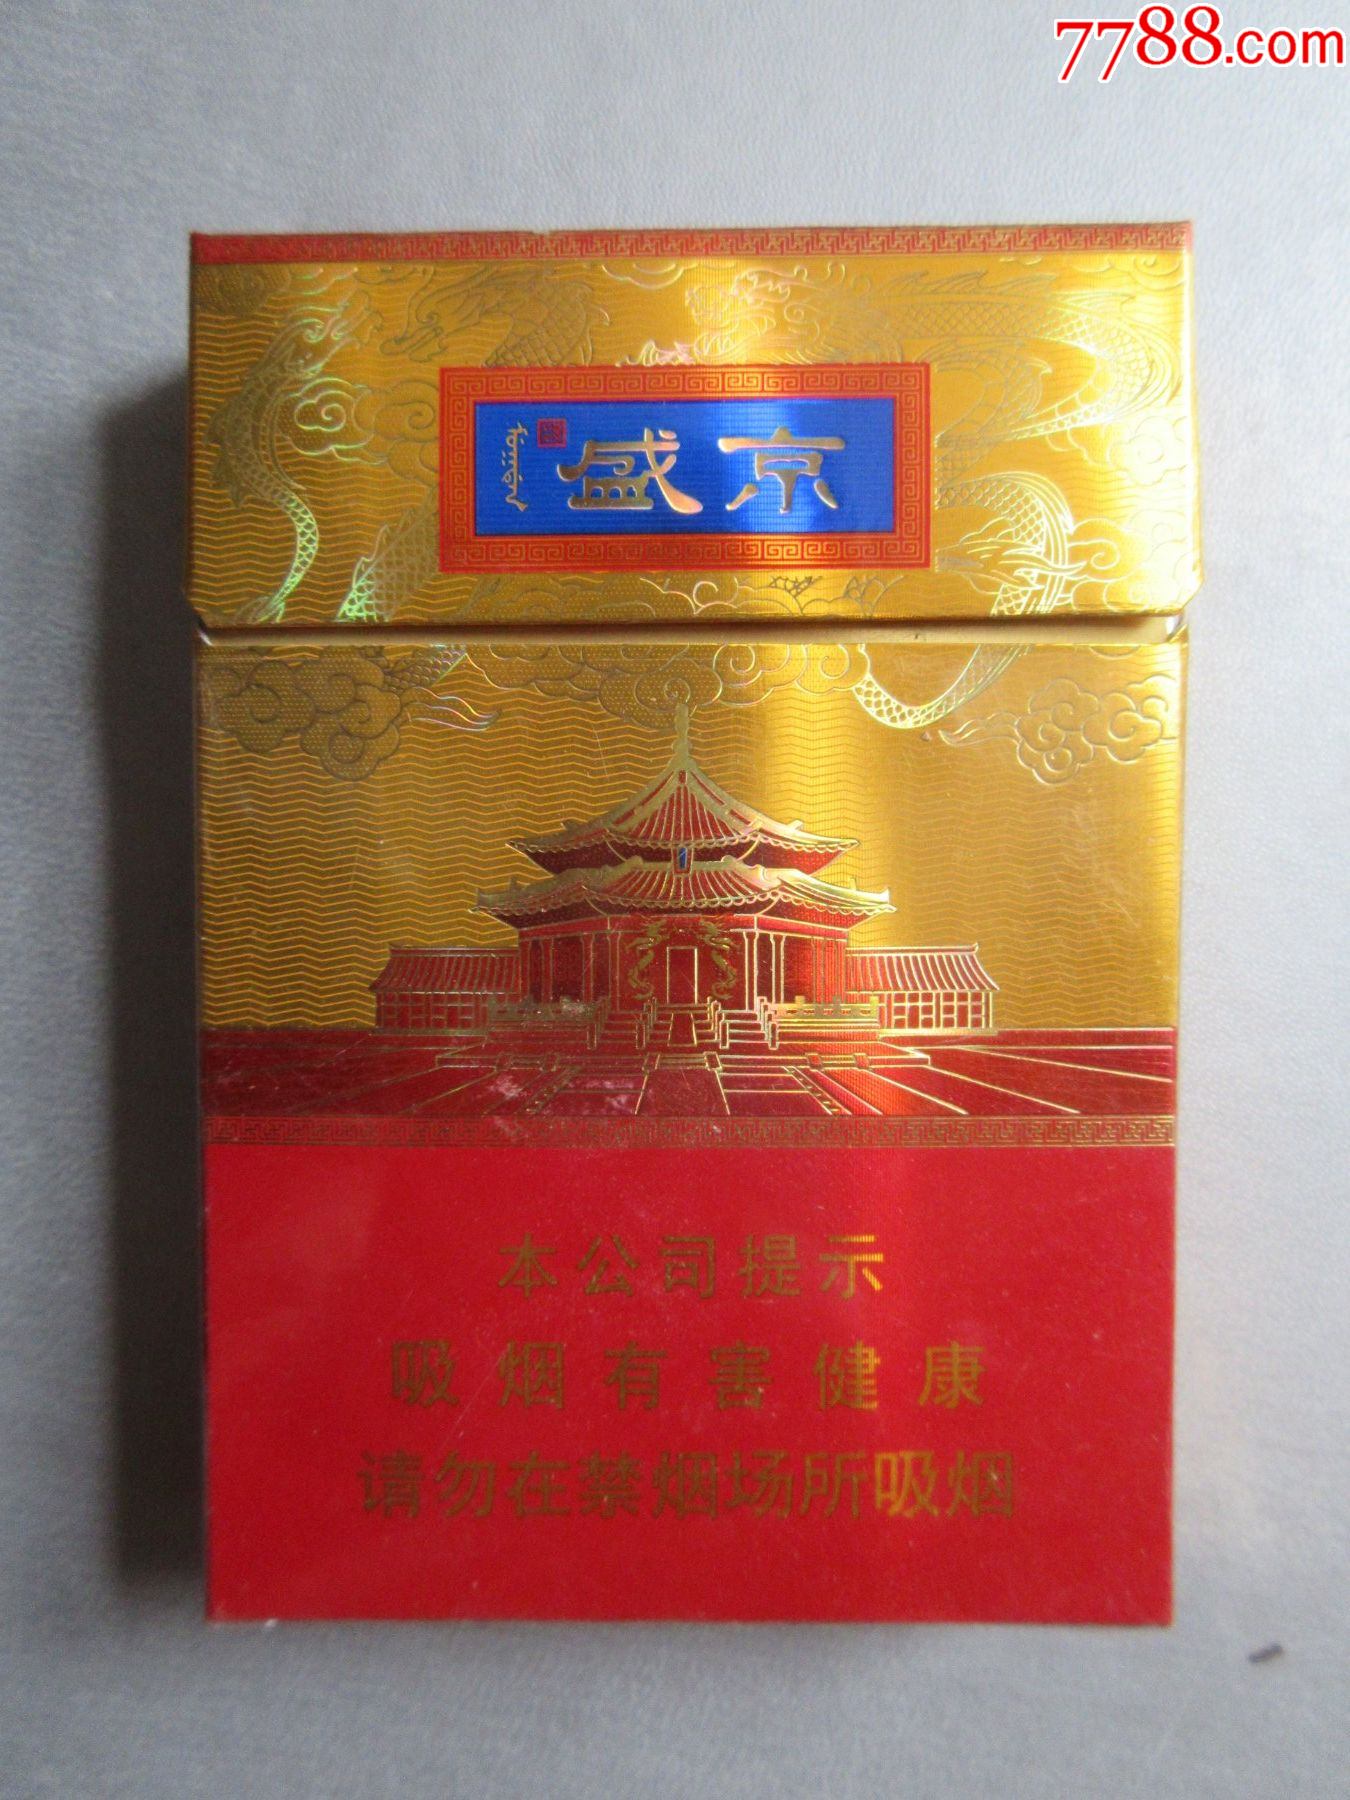 盛京香烟多少钱一包图片